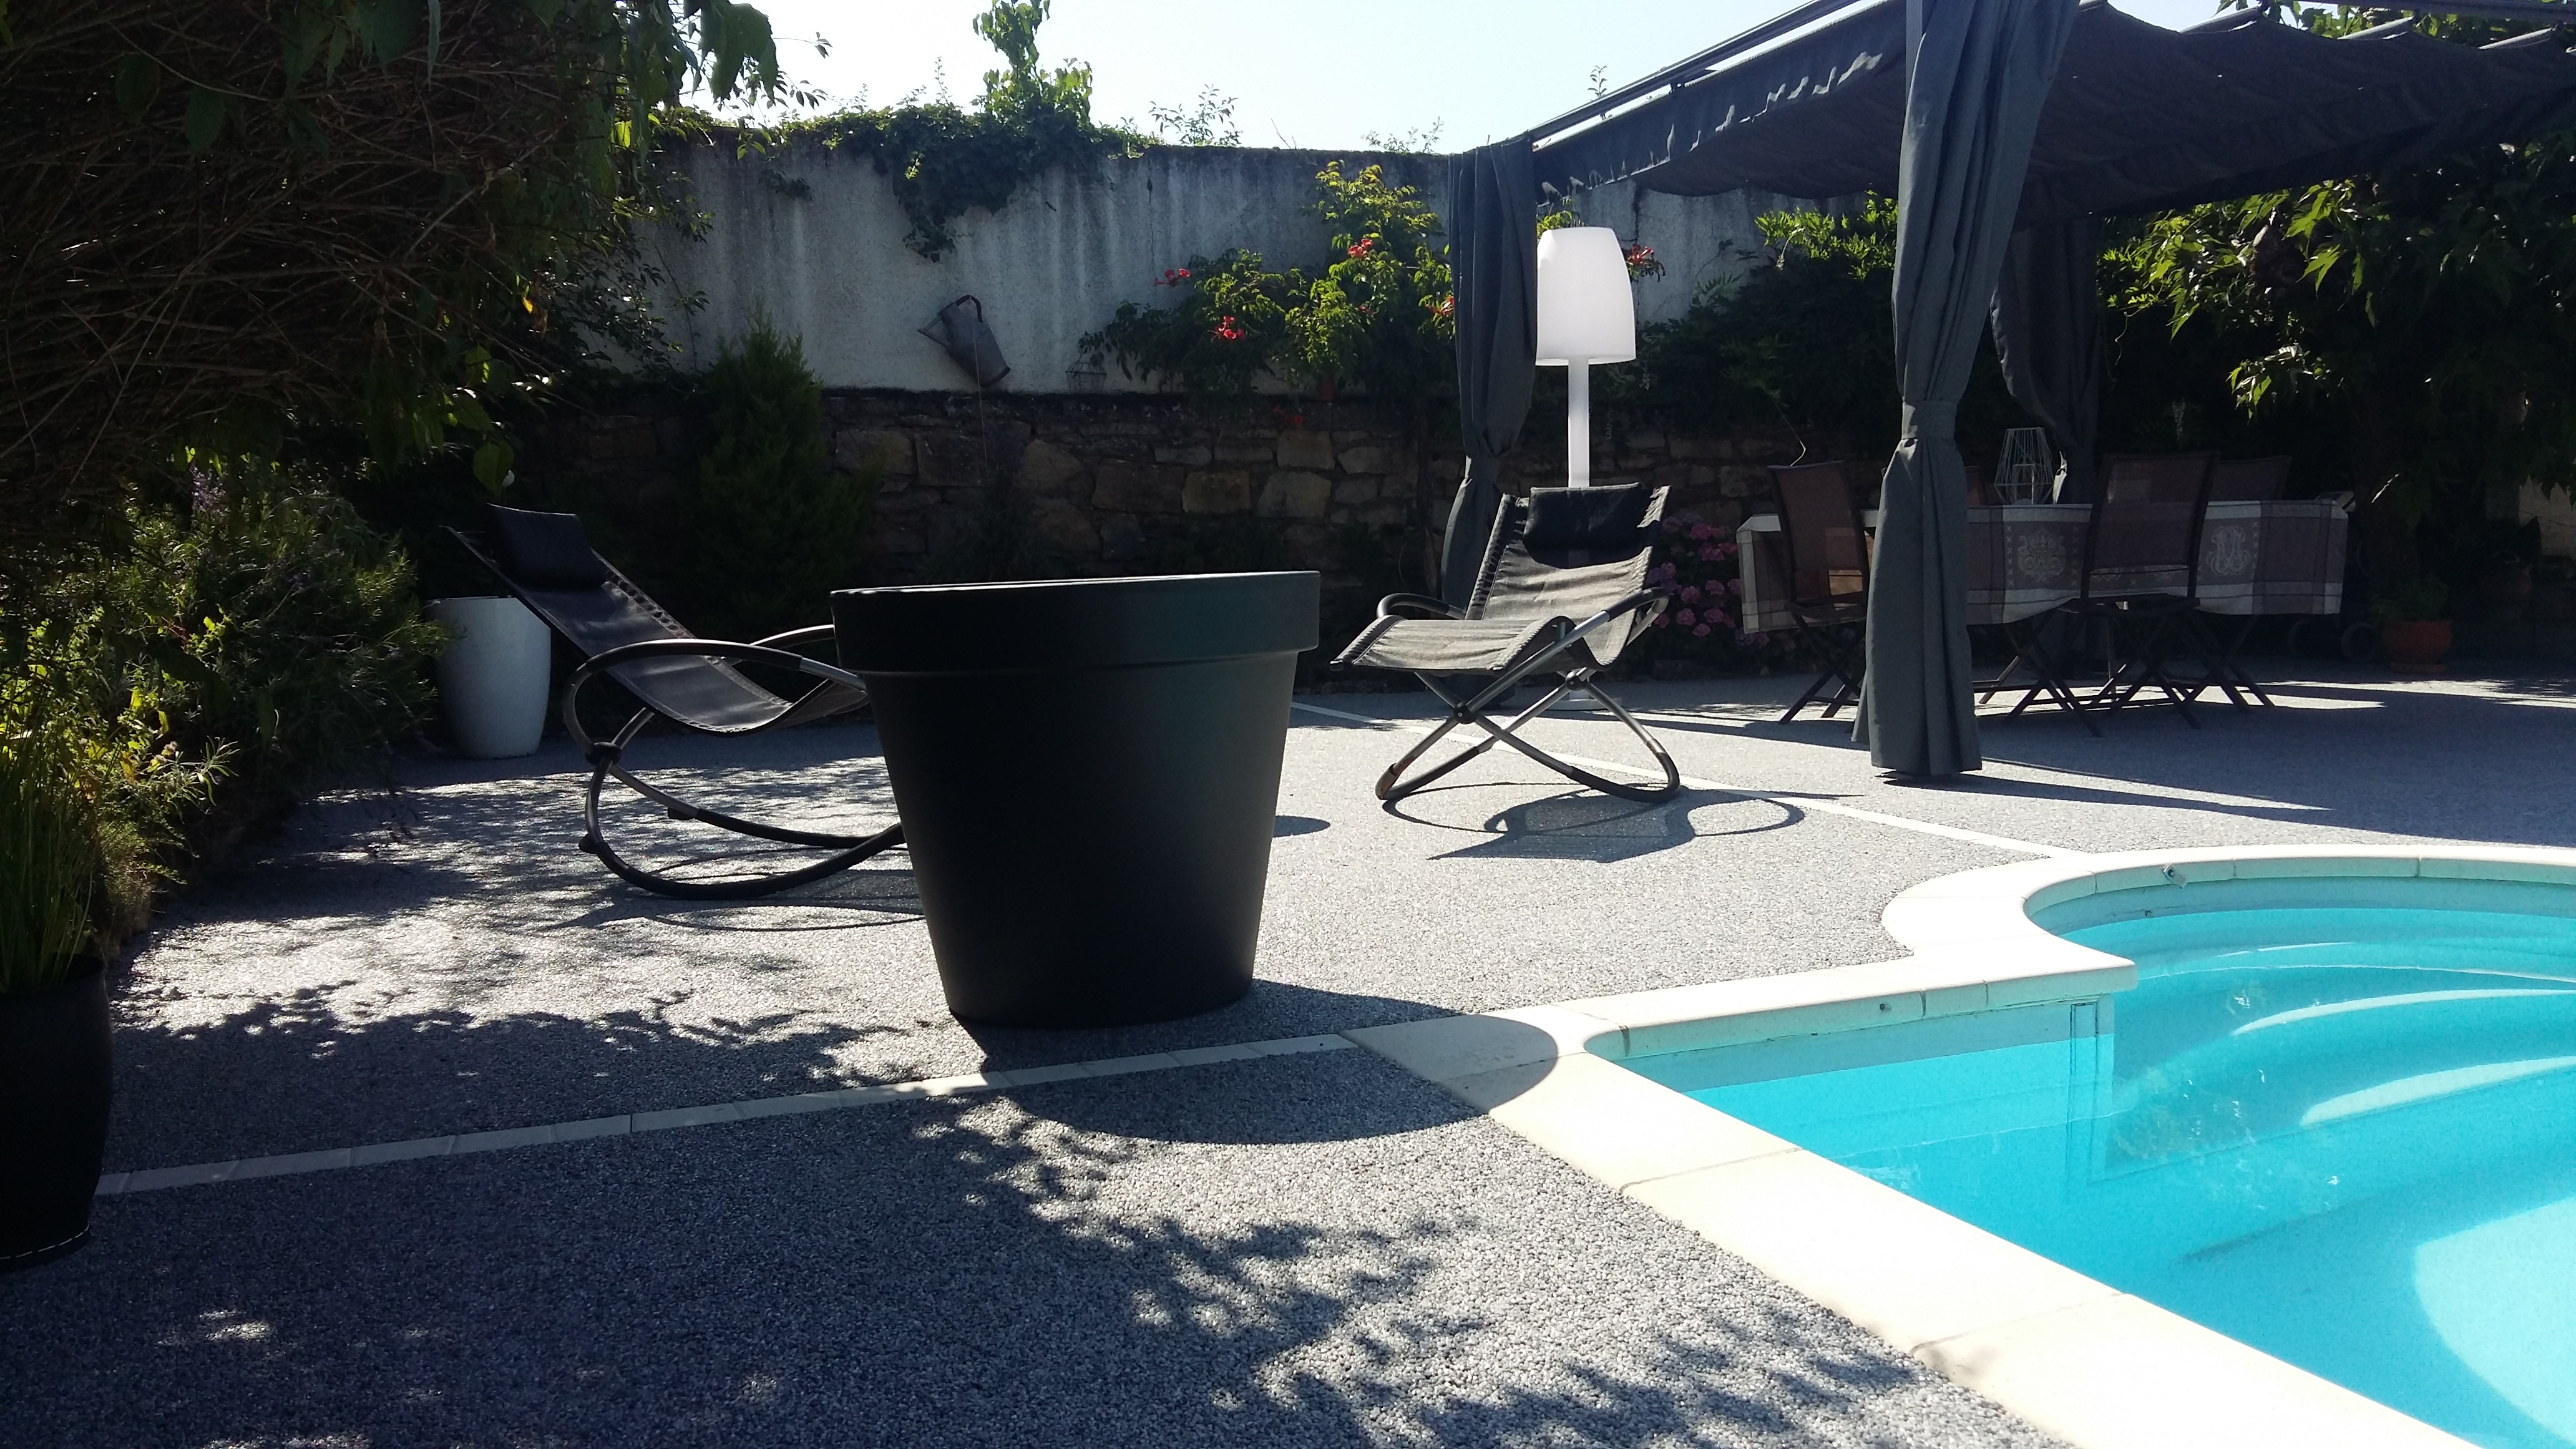 Ralisation Plage de piscine en Hydrostar - Entreprise Chierici - Aveyron cre le 21/09/2018